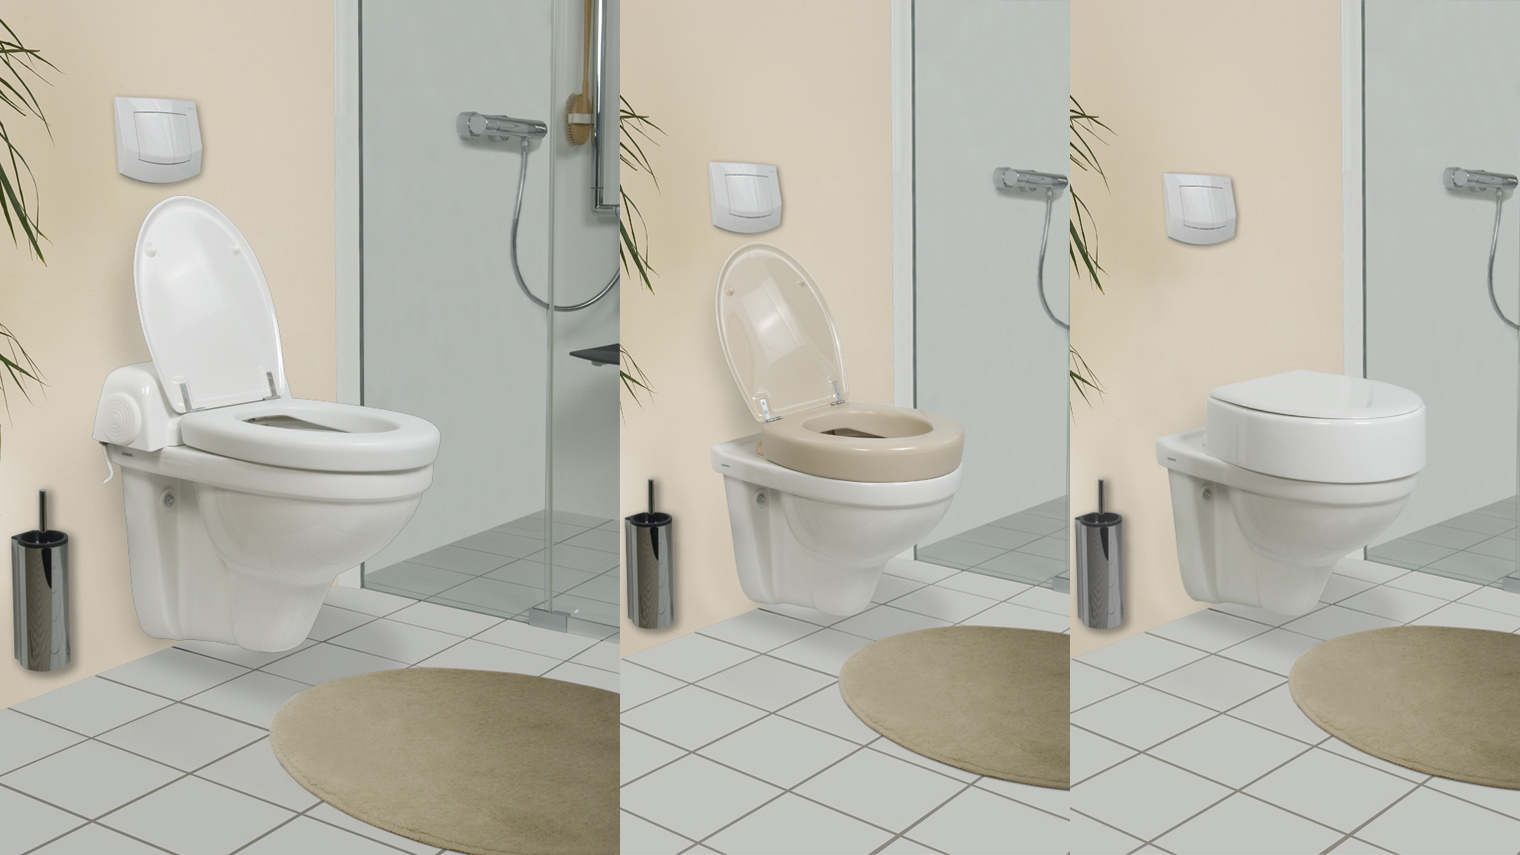 Drei Beispiele von Dusch-WC-Aufsätzen in unterschiedlichen Höhen.